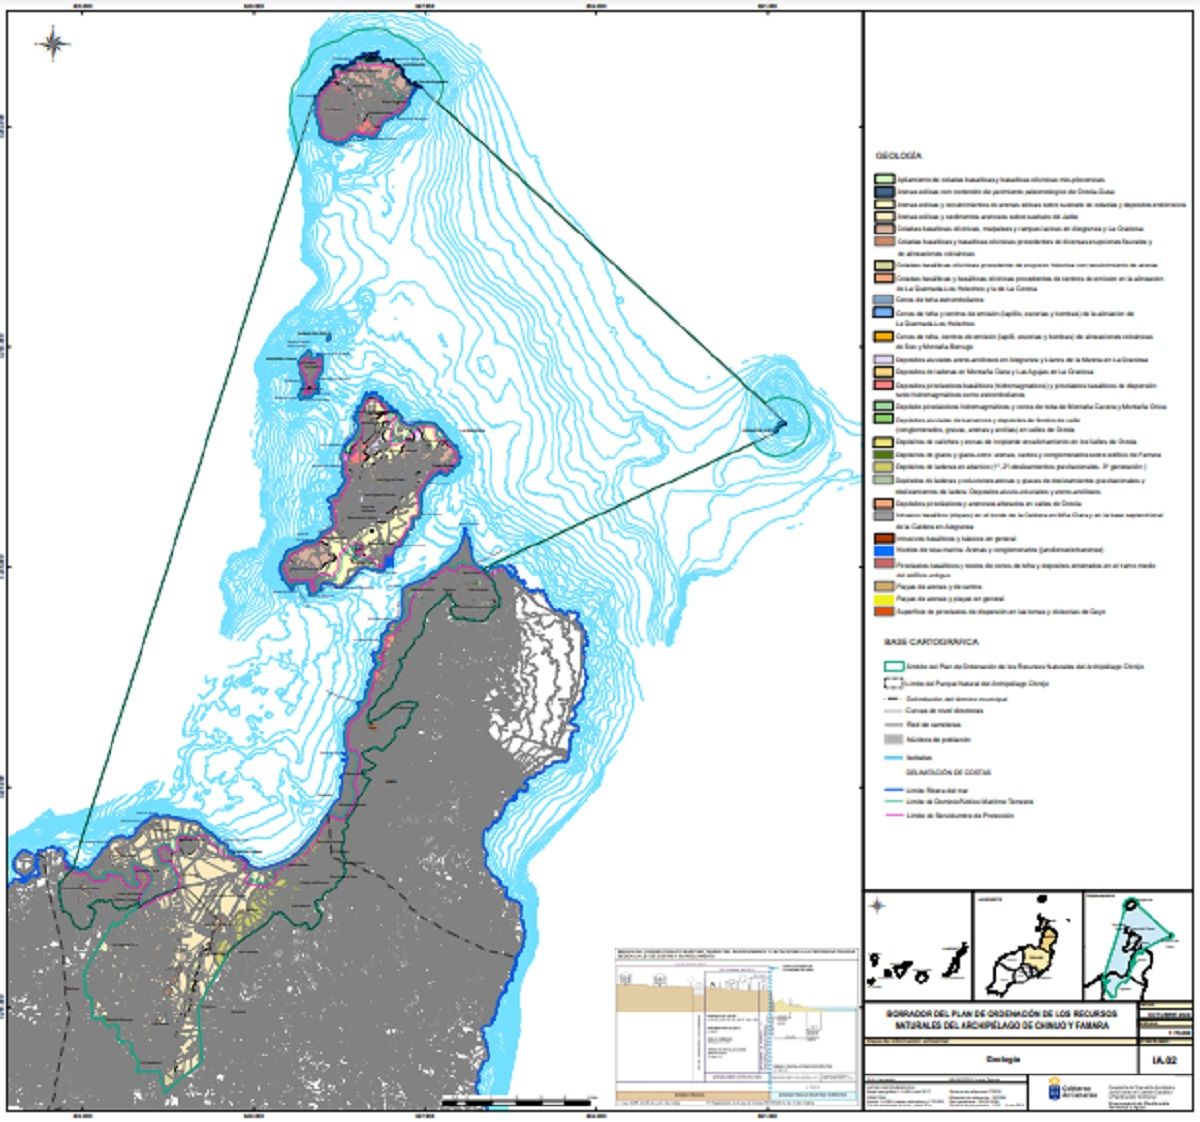 Cartografía de los espacios del Plan de Ordenación de los Recursos Naturales del Archipiélago Chinijo y Famara